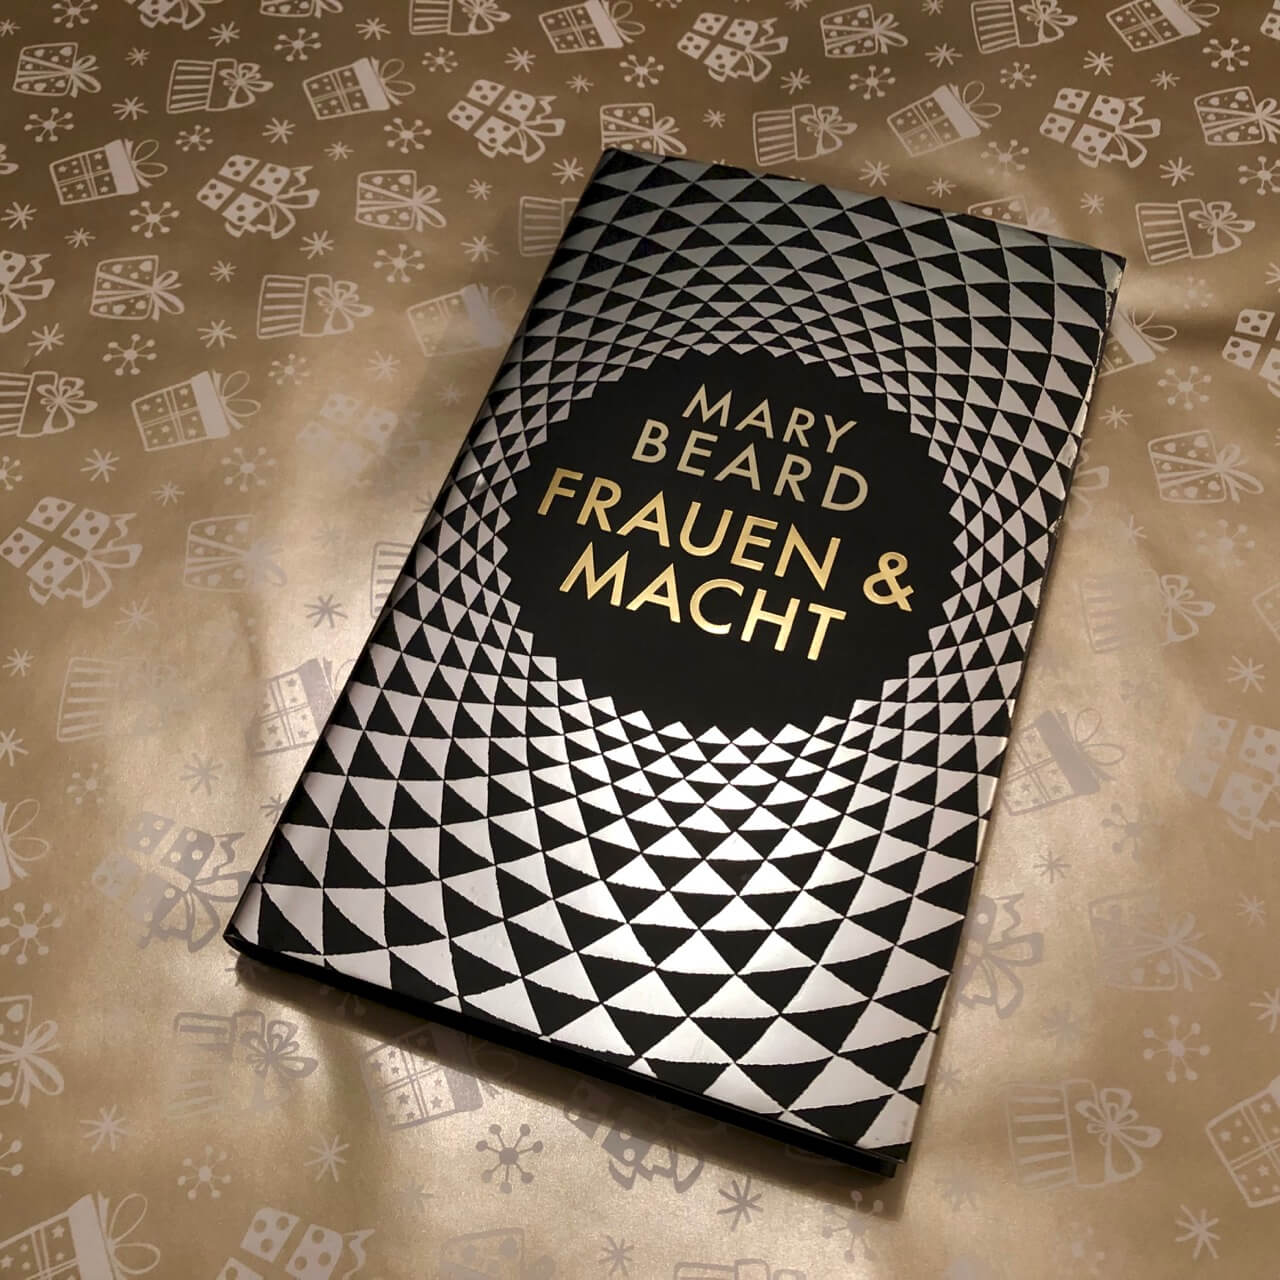 Frauen & Macht, Mary Bread - Ein kurzweiliges, eindrucksvolles Buch für Mann und Frau.